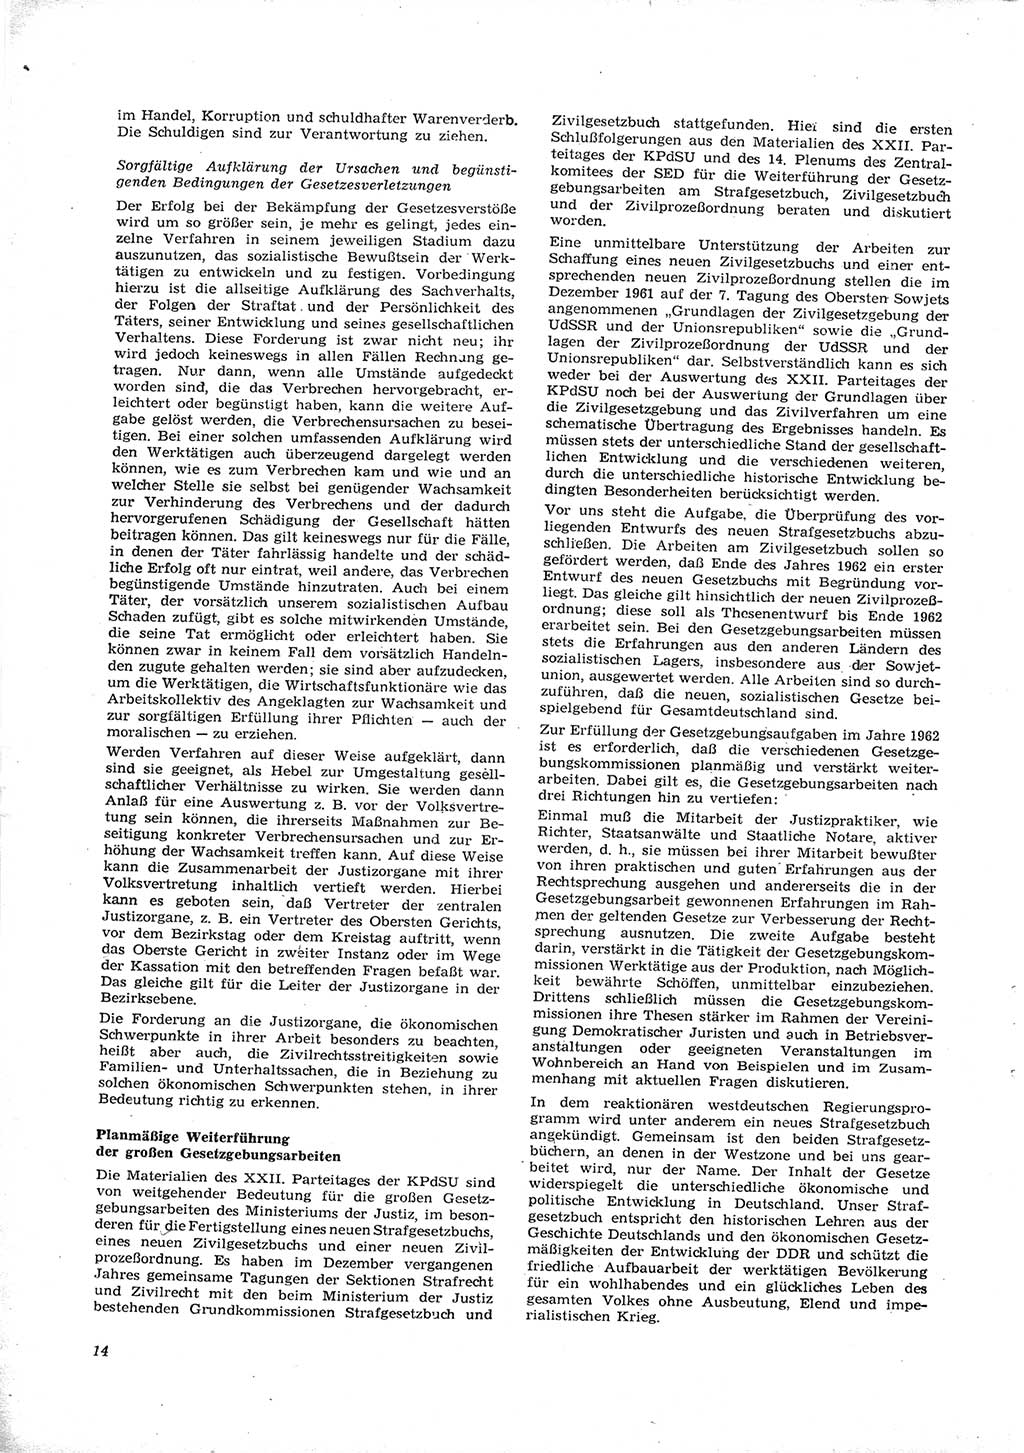 Neue Justiz (NJ), Zeitschrift für Recht und Rechtswissenschaft [Deutsche Demokratische Republik (DDR)], 16. Jahrgang 1962, Seite 14 (NJ DDR 1962, S. 14)